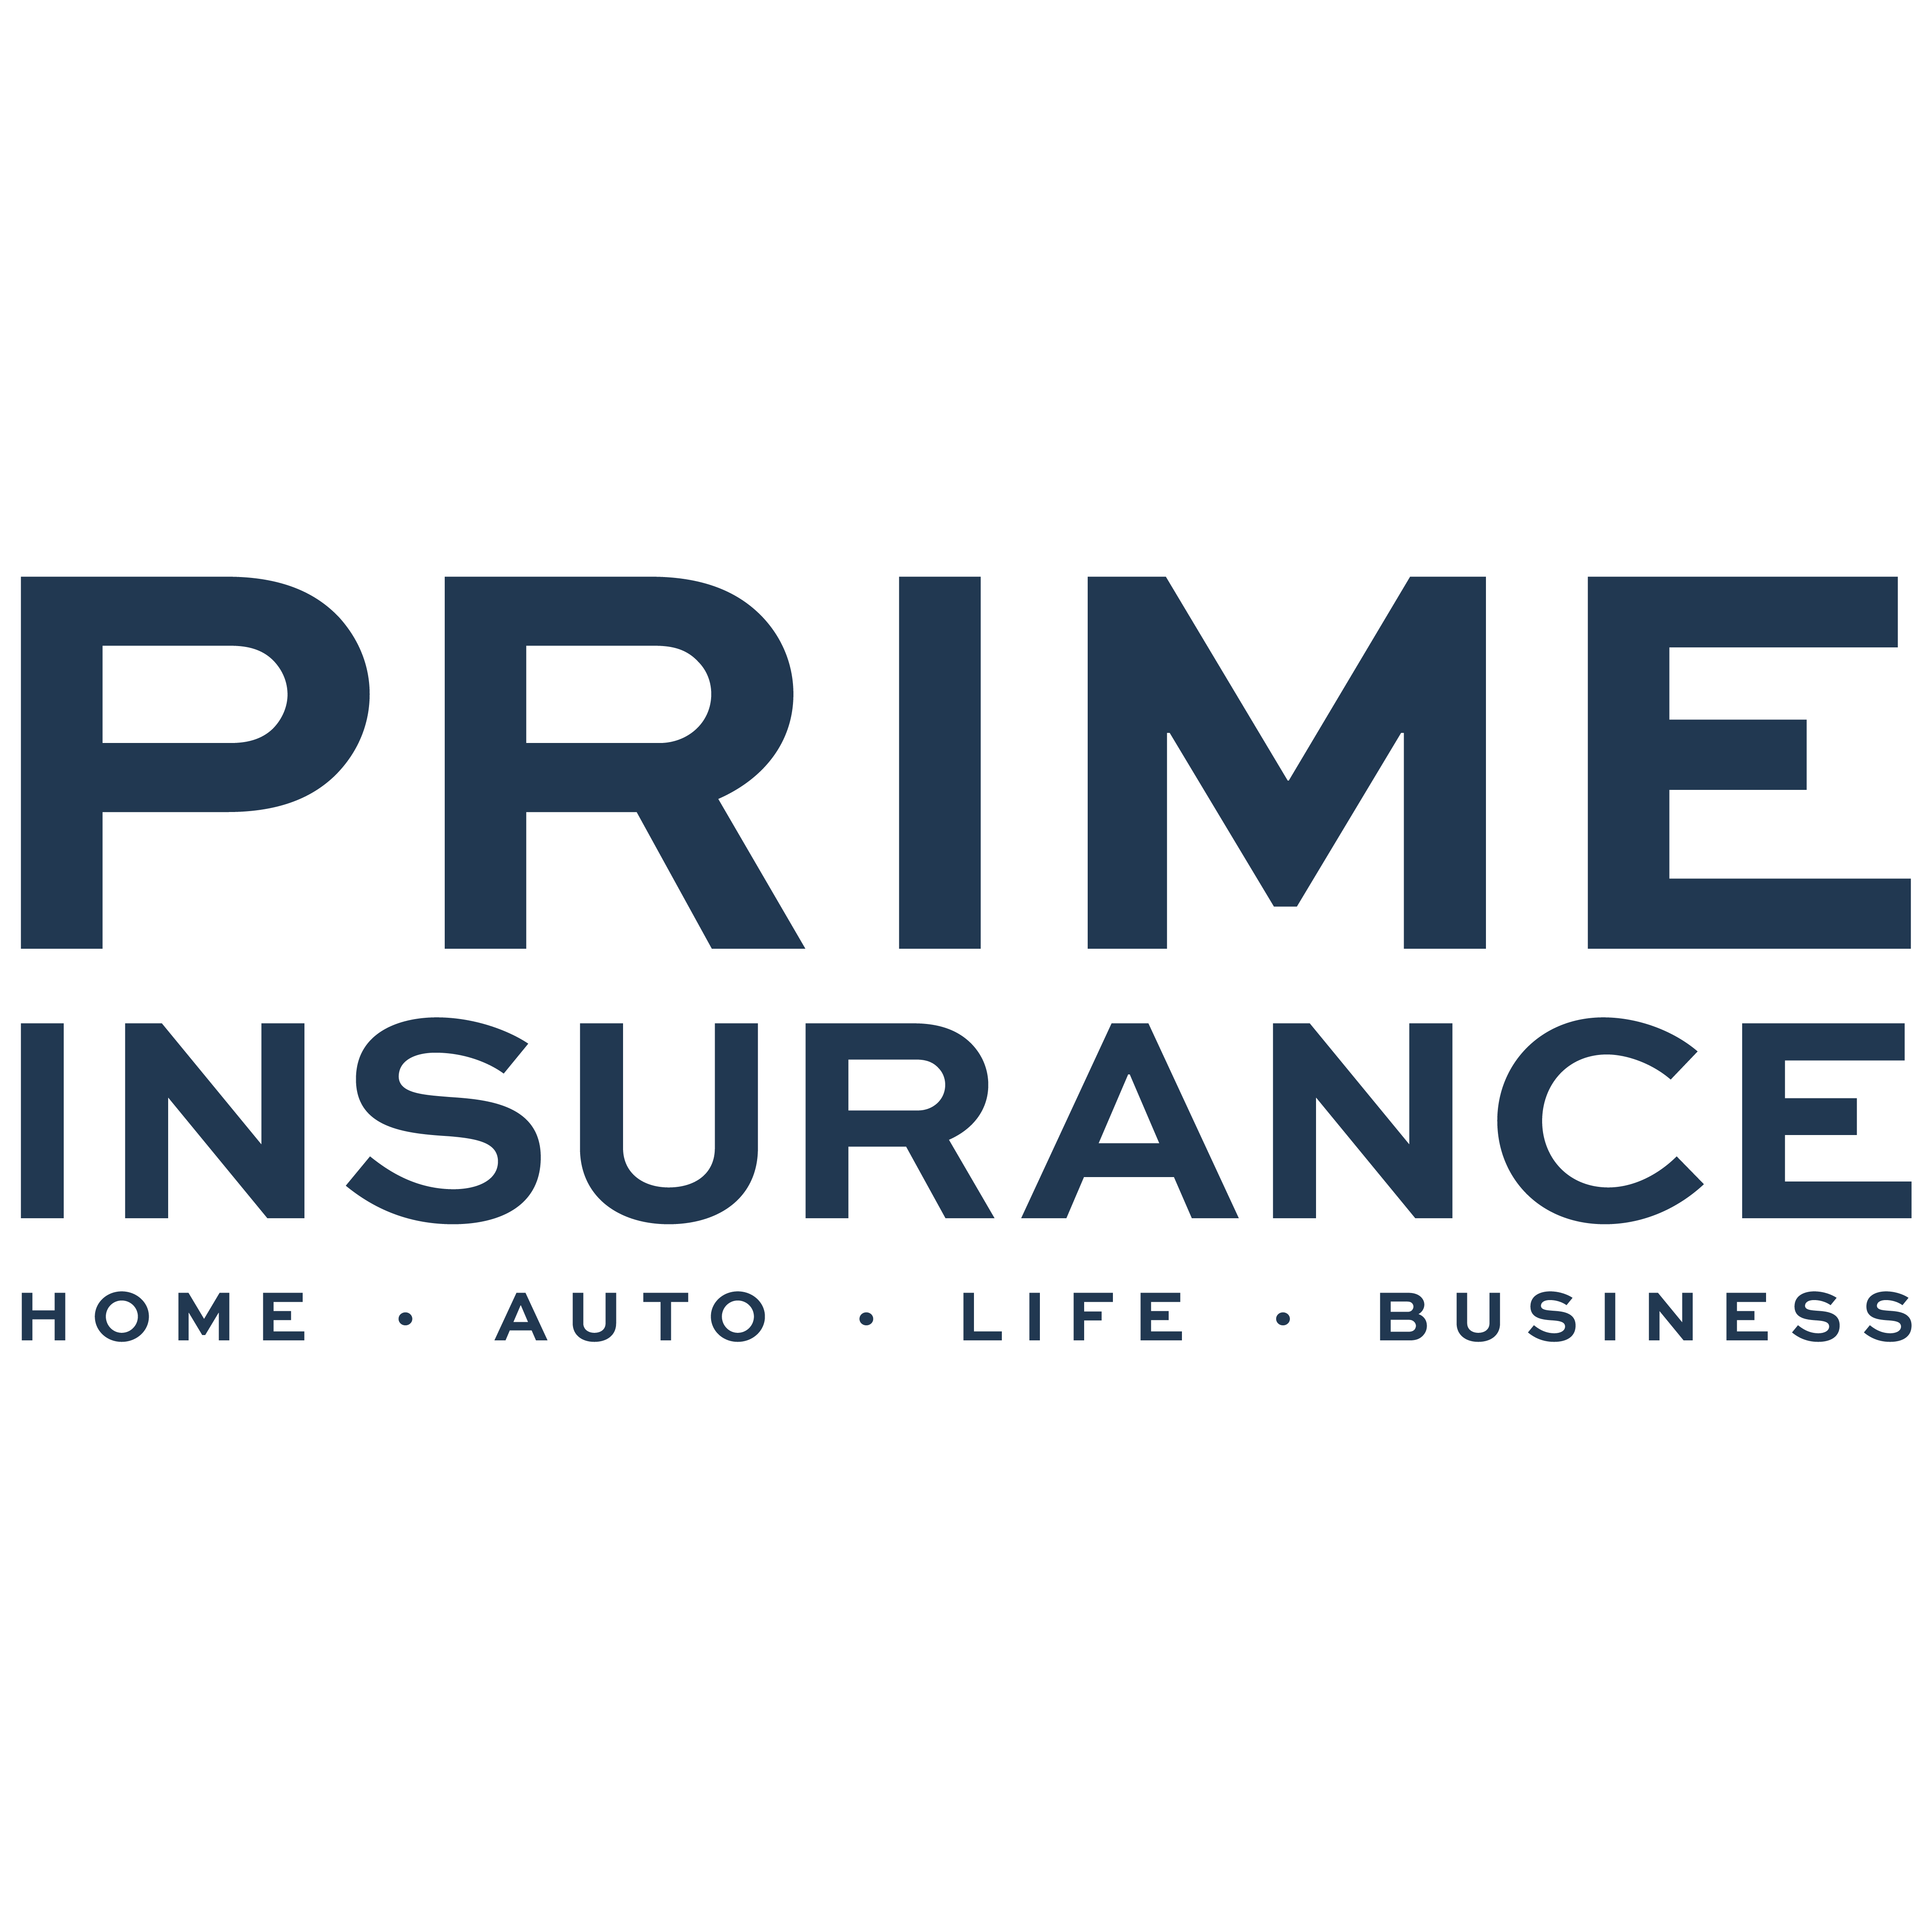 Prime Insurance Agency - Kansas City, MO 64158 - (816)479-0595 | ShowMeLocal.com